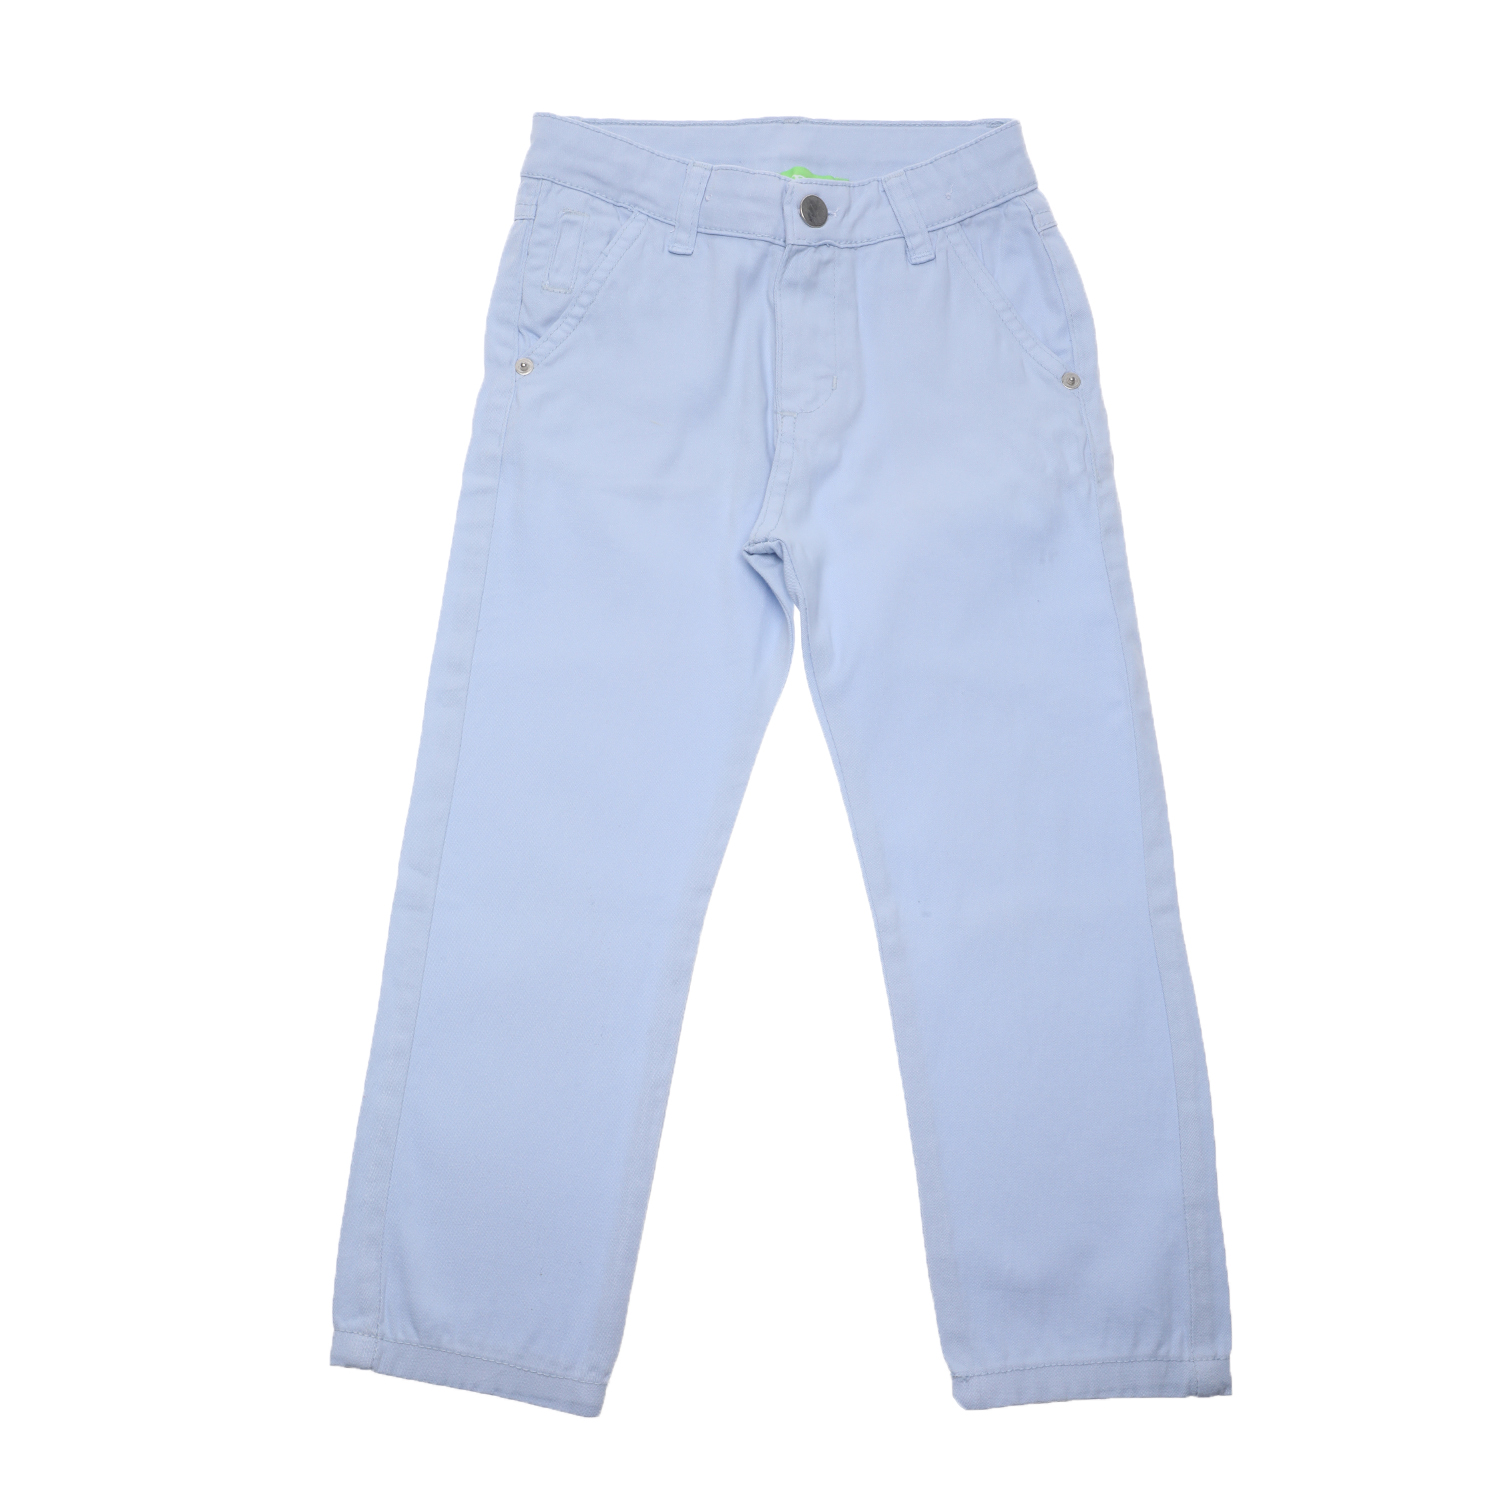 Παιδικά/Boys/Ρούχα/Παντελόνια SAM 0-13 - Παιδικό chino παντελονι SAM 0-13 γαλάζιο